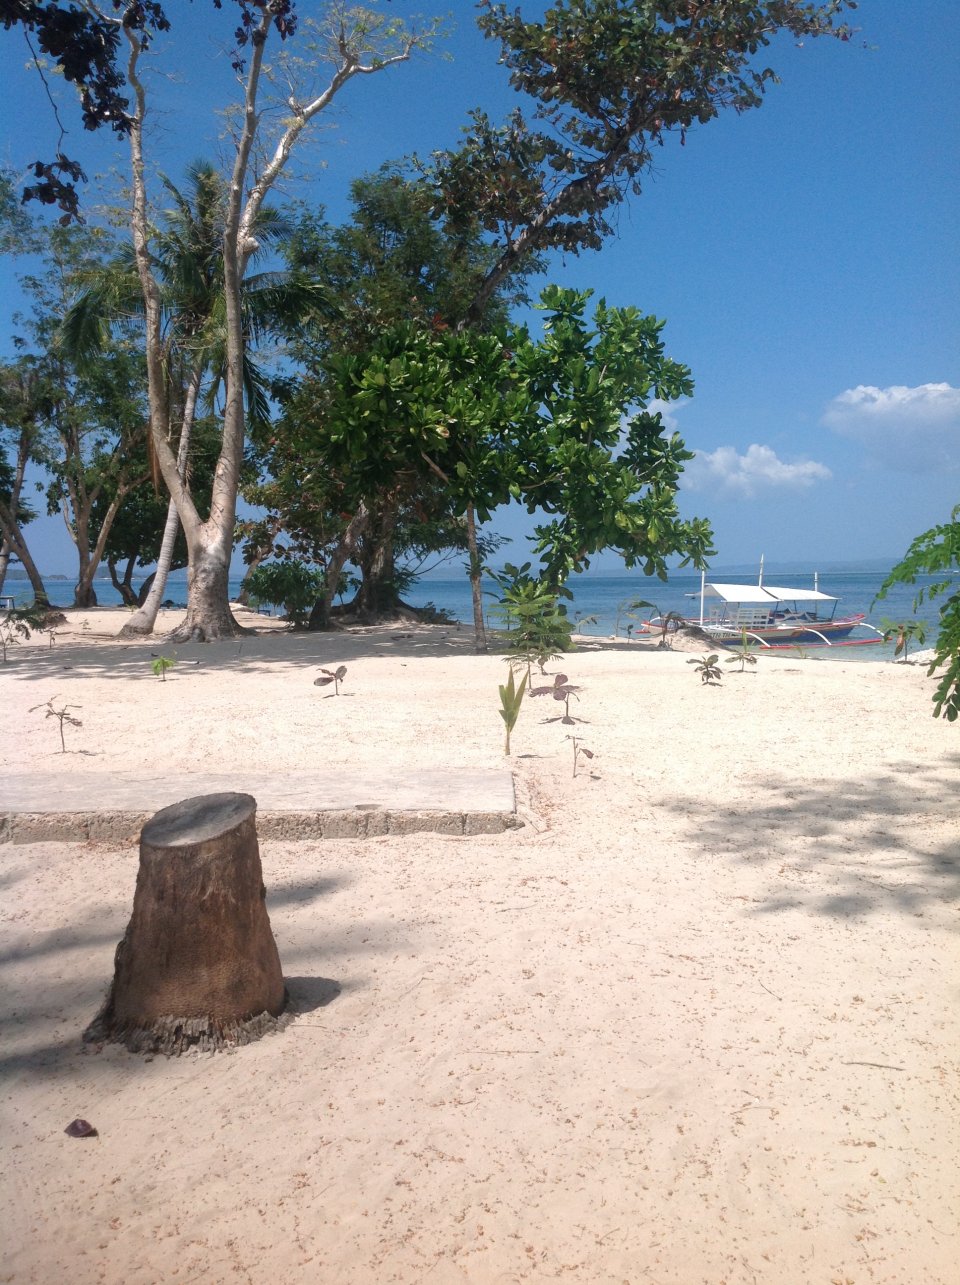 Calambuyan Island